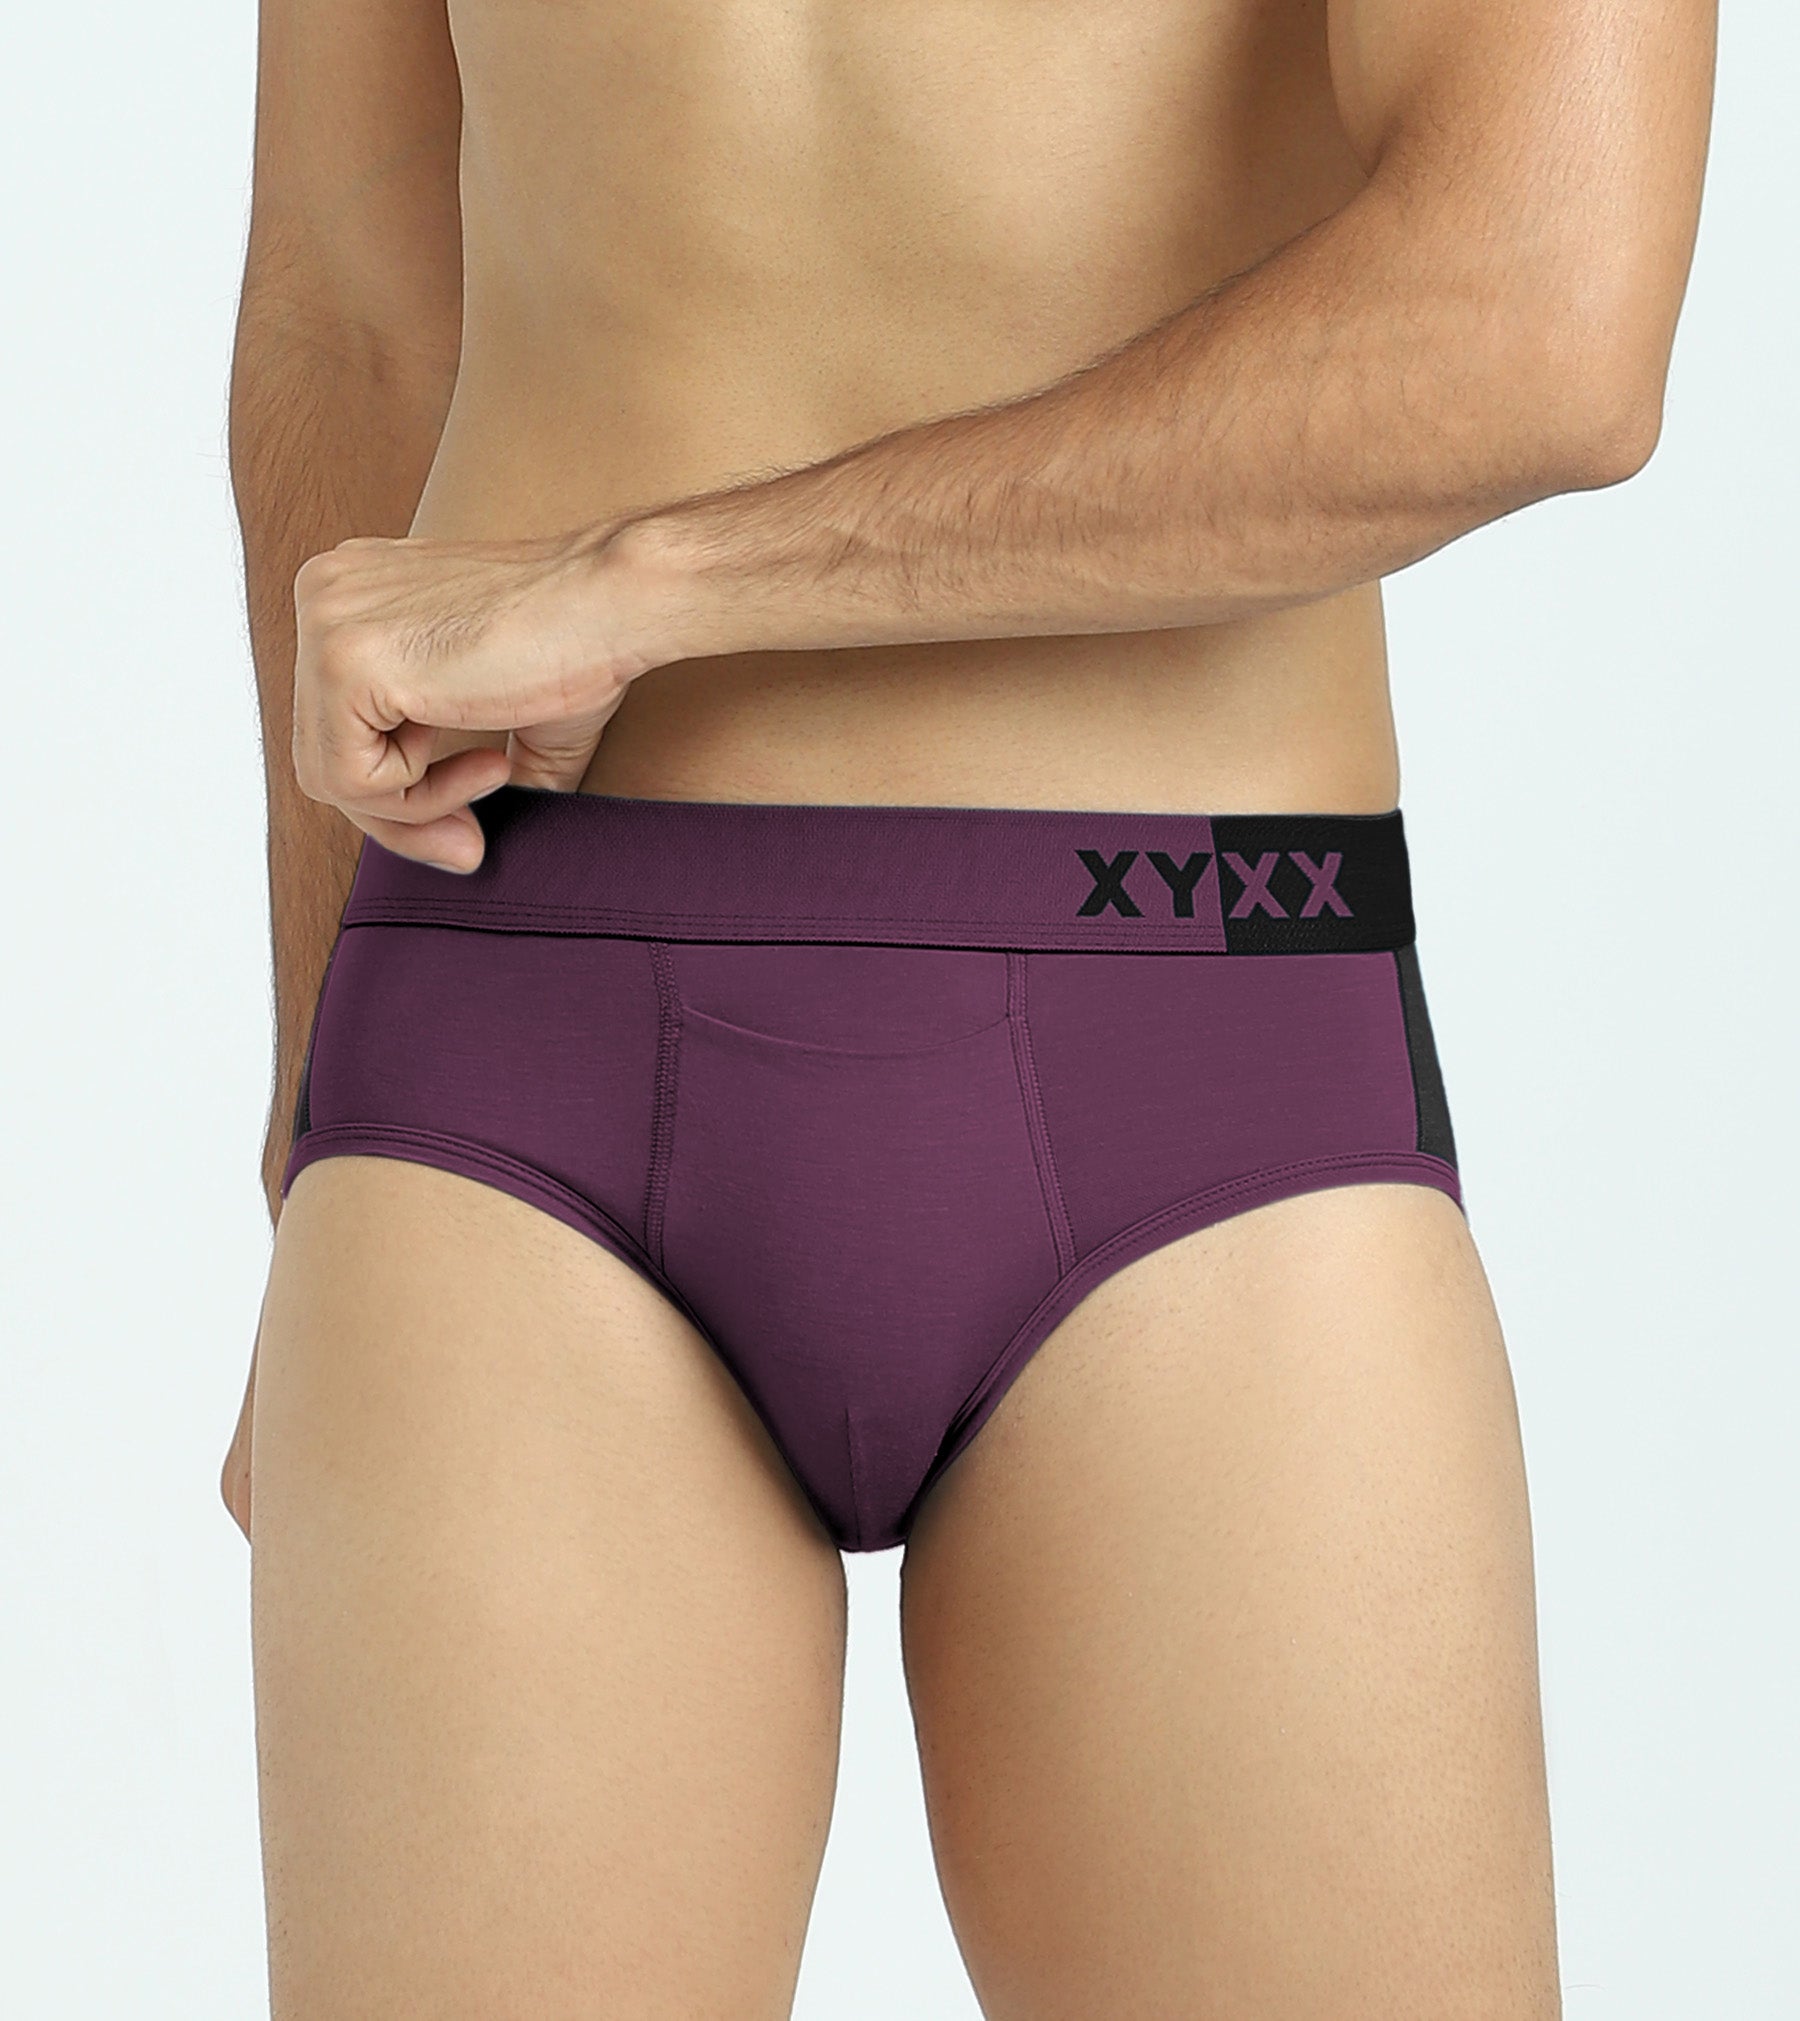 Dualist Modal Briefs For Men Purple Plum -  XYXX Mens Apparels